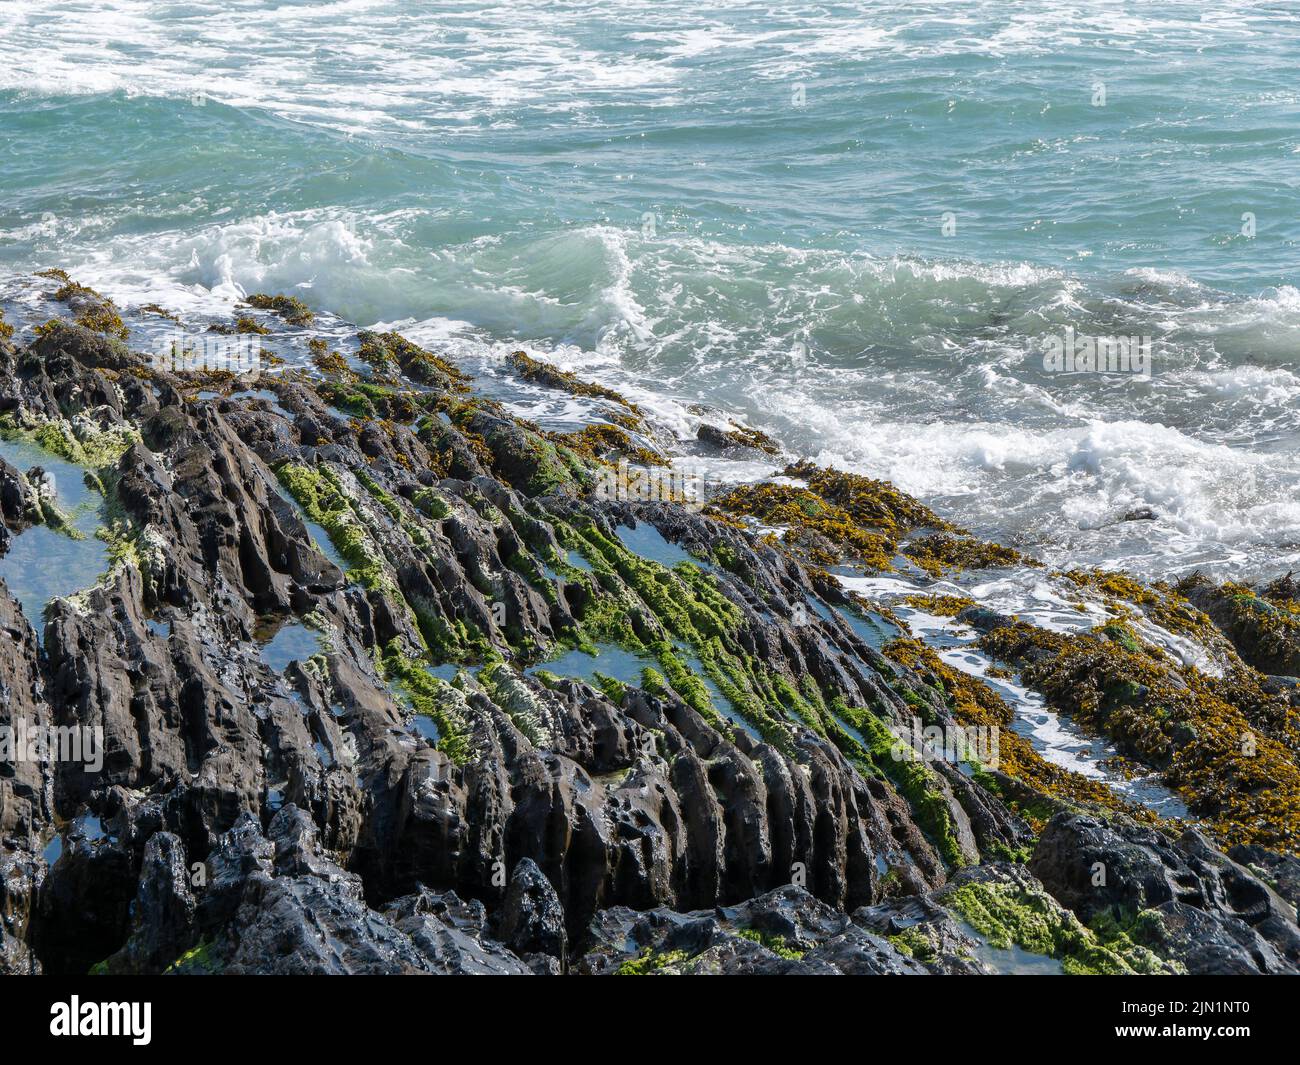 Foam on the sea waves and coastal rocks. Seaweed on rocks, landscape. Green moss on rock near body of water Stock Photo